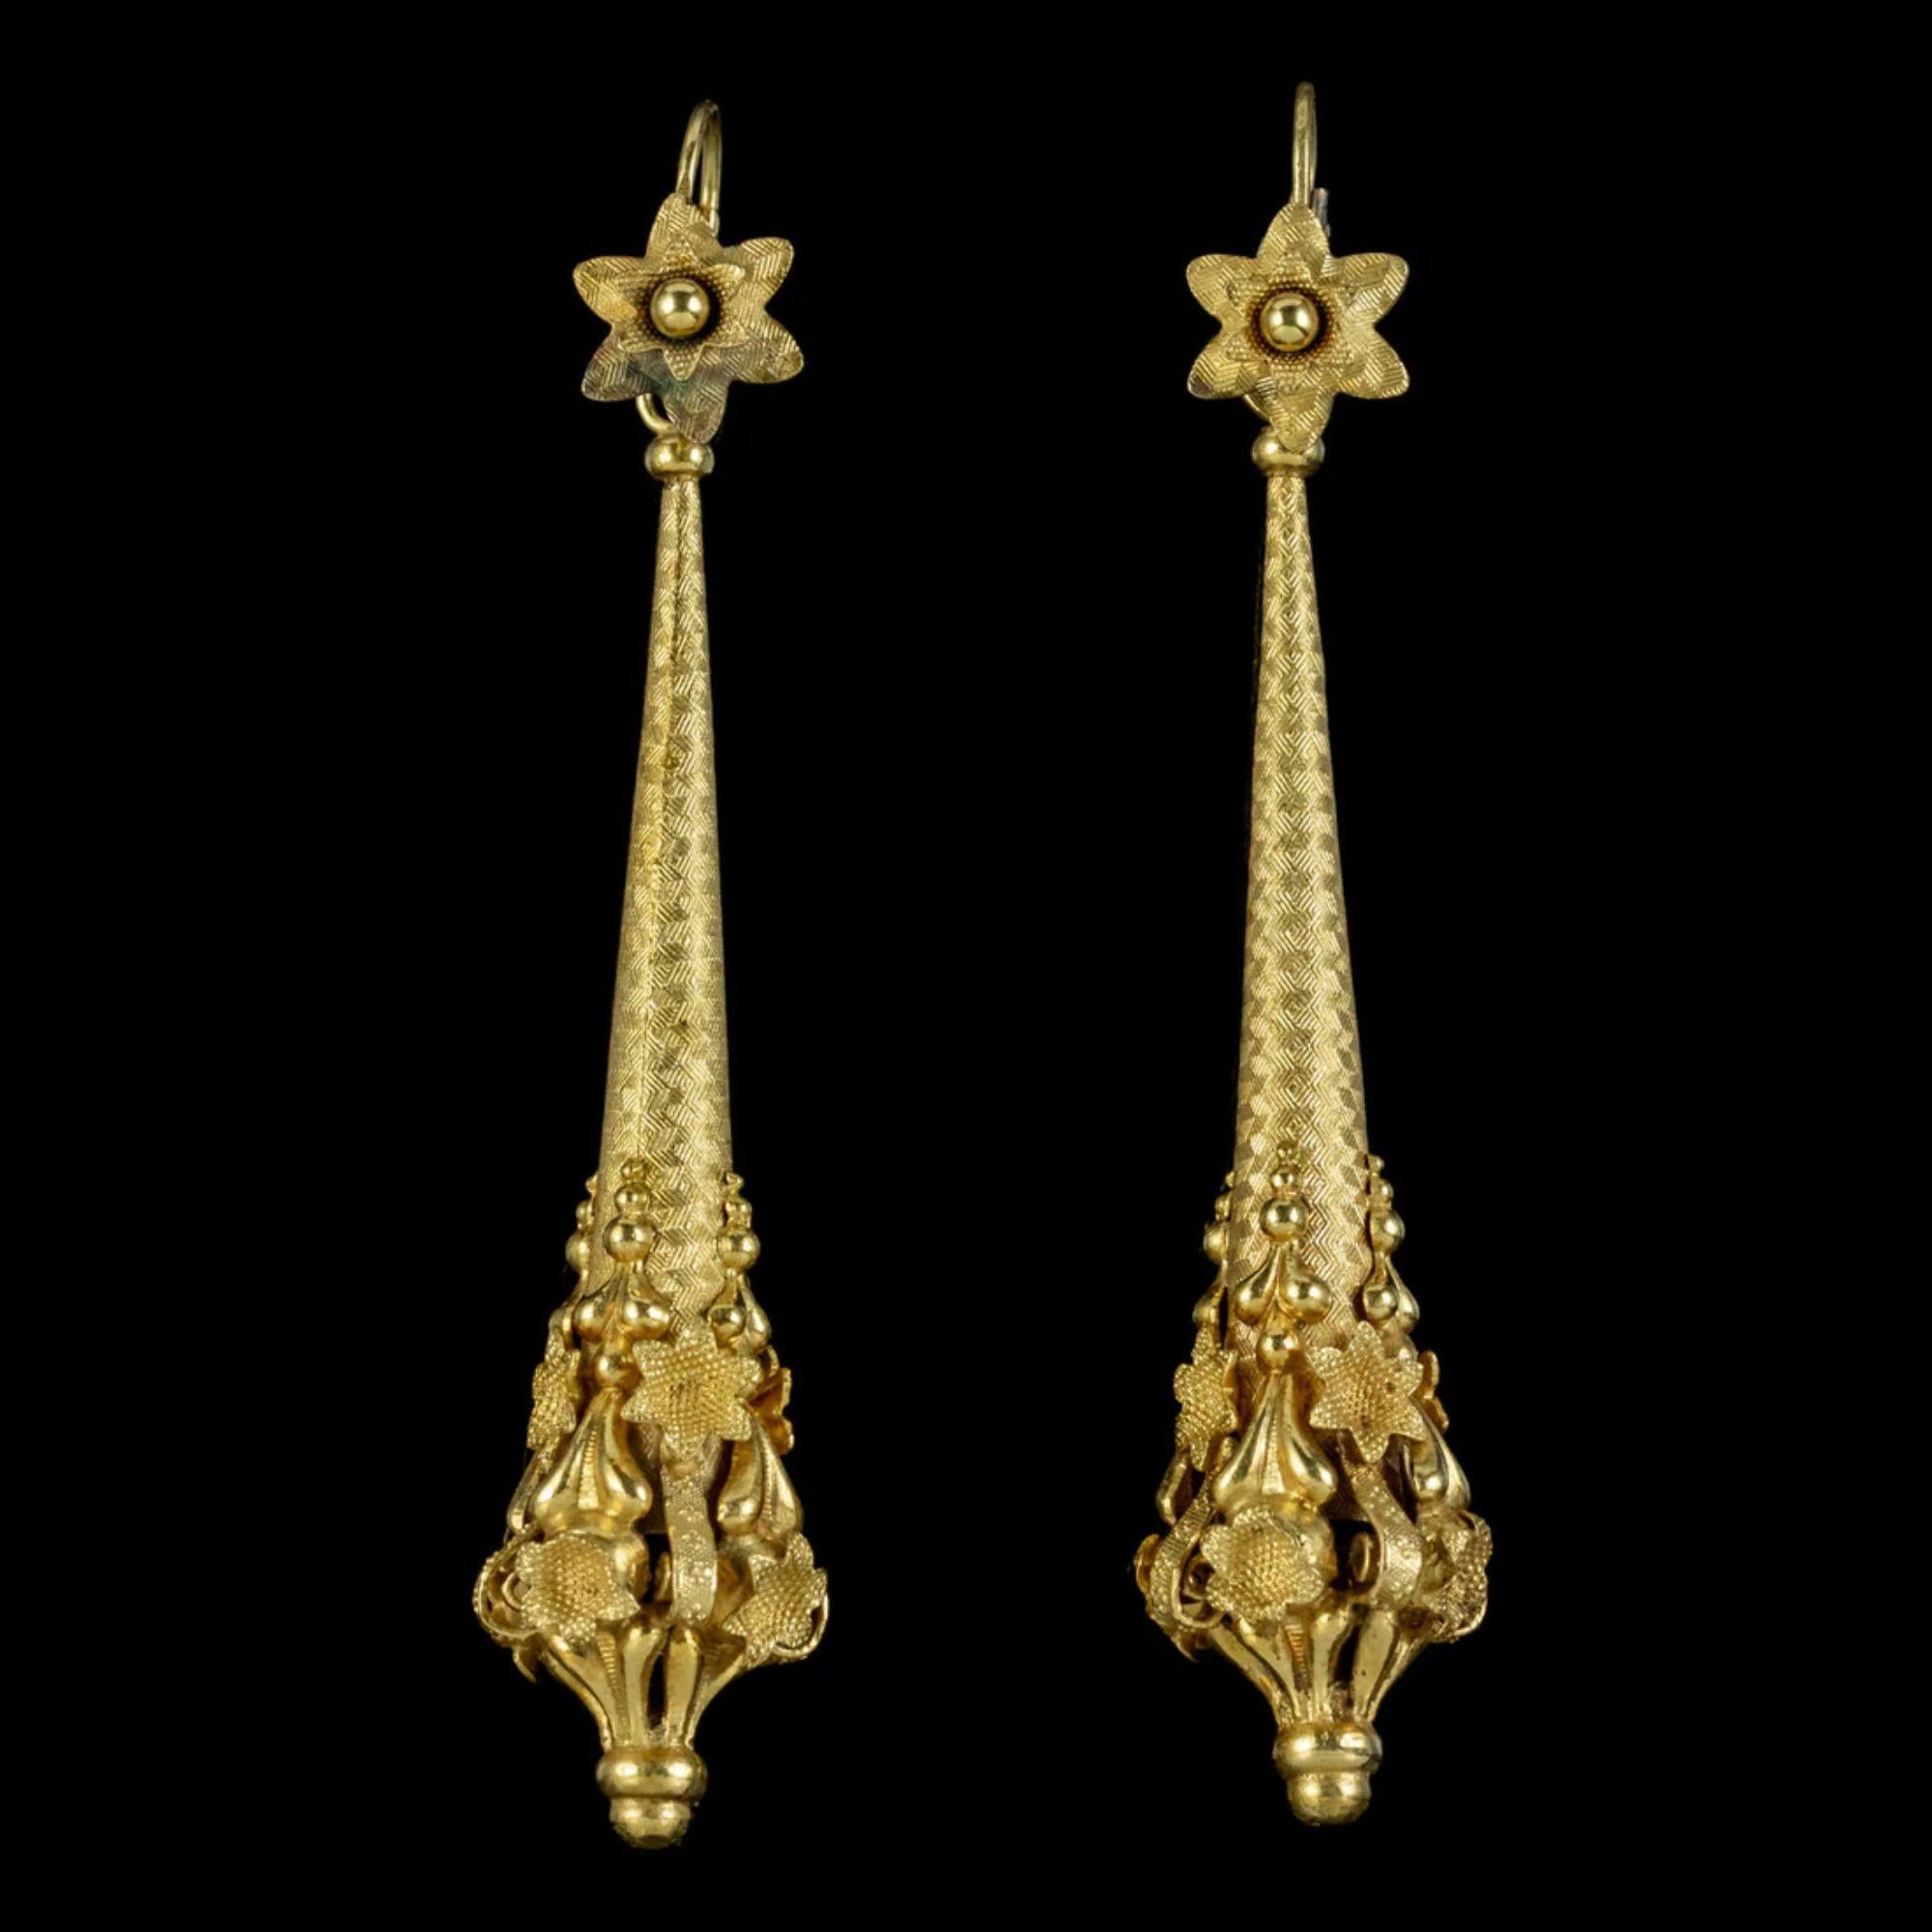 Ein spektakuläres Paar antiker georgianischer Tag- und Nacht-Ohrringe aus dem frühen 19. Jahrhundert, gefertigt aus Pinchbeck und vergoldet in 18 Karat Gelbgold. 

Die langen Tropfenfänger sind mit einem fabelhaften Chevron-Muster ziseliert und